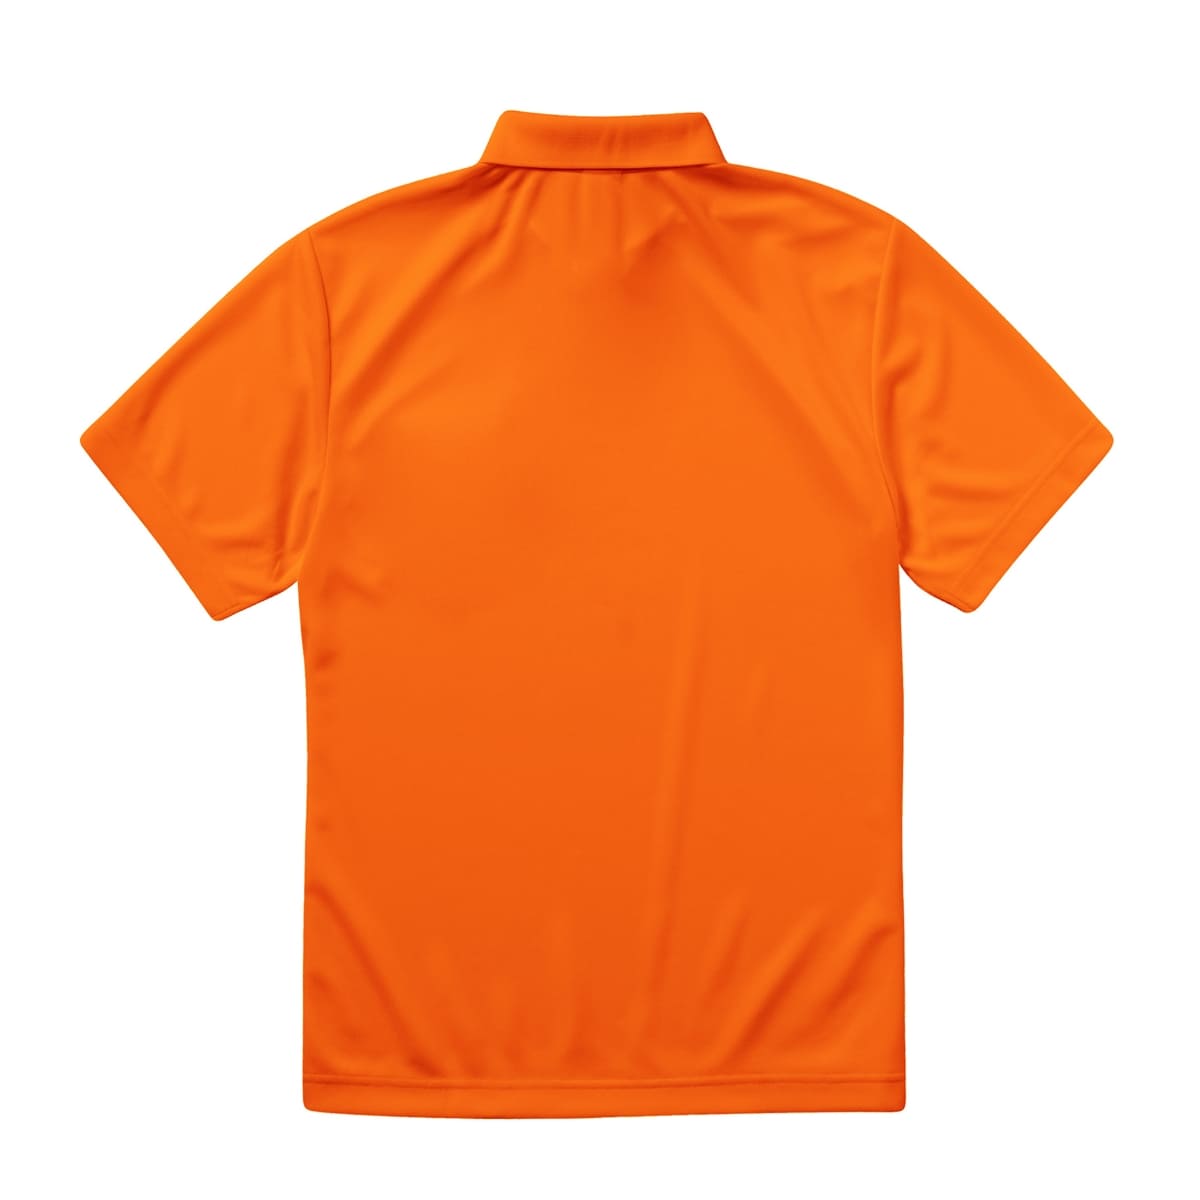 4.1オンス ドライアスレチック ポロシャツ | ビッグサイズ | 1枚 | 5910-01 | ブライトグリーン